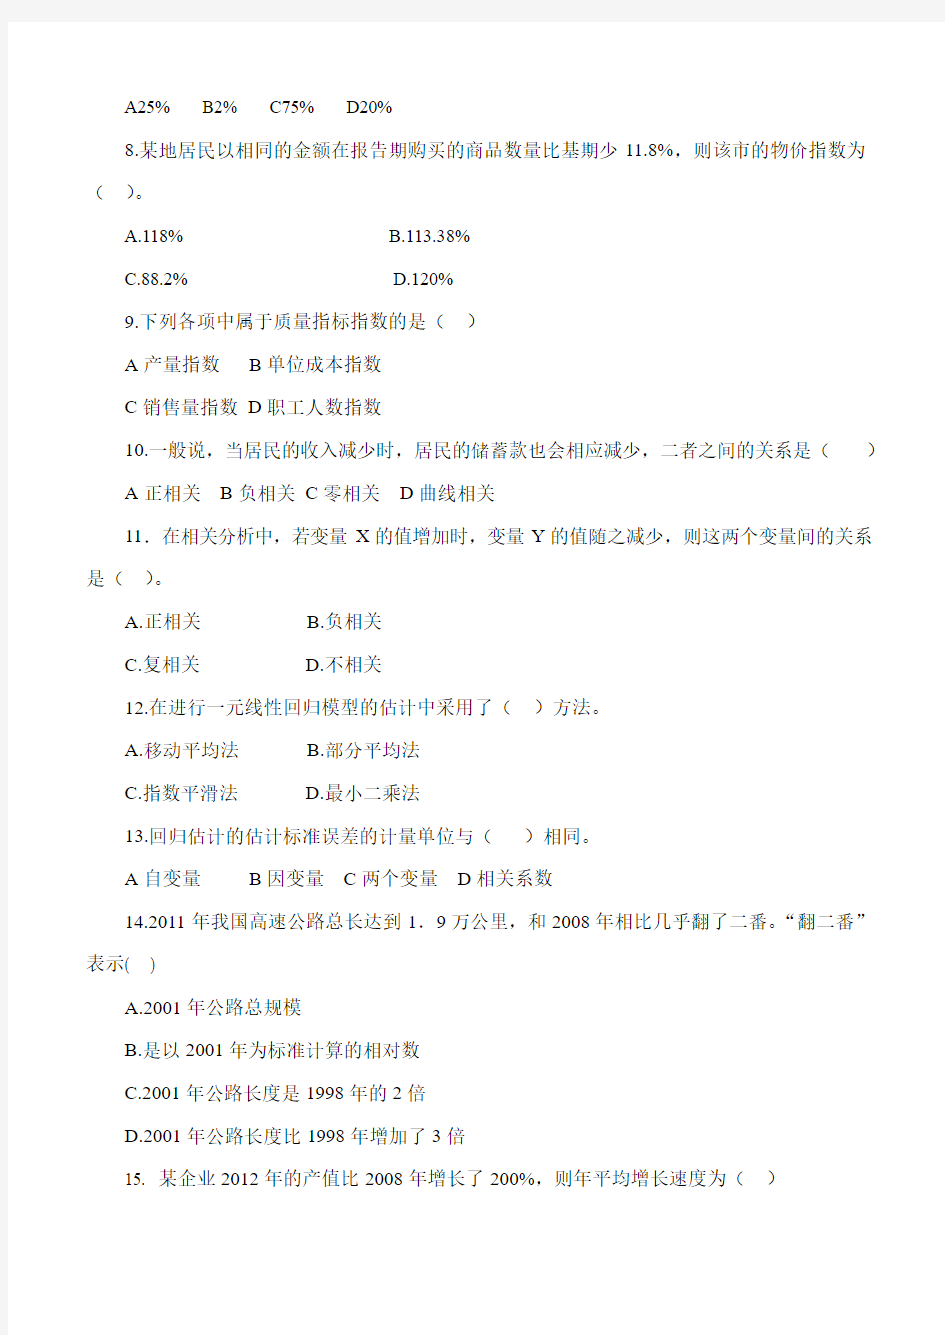 统计学第3阶段练习题 江南大学考试题库答案,答案在最后一页